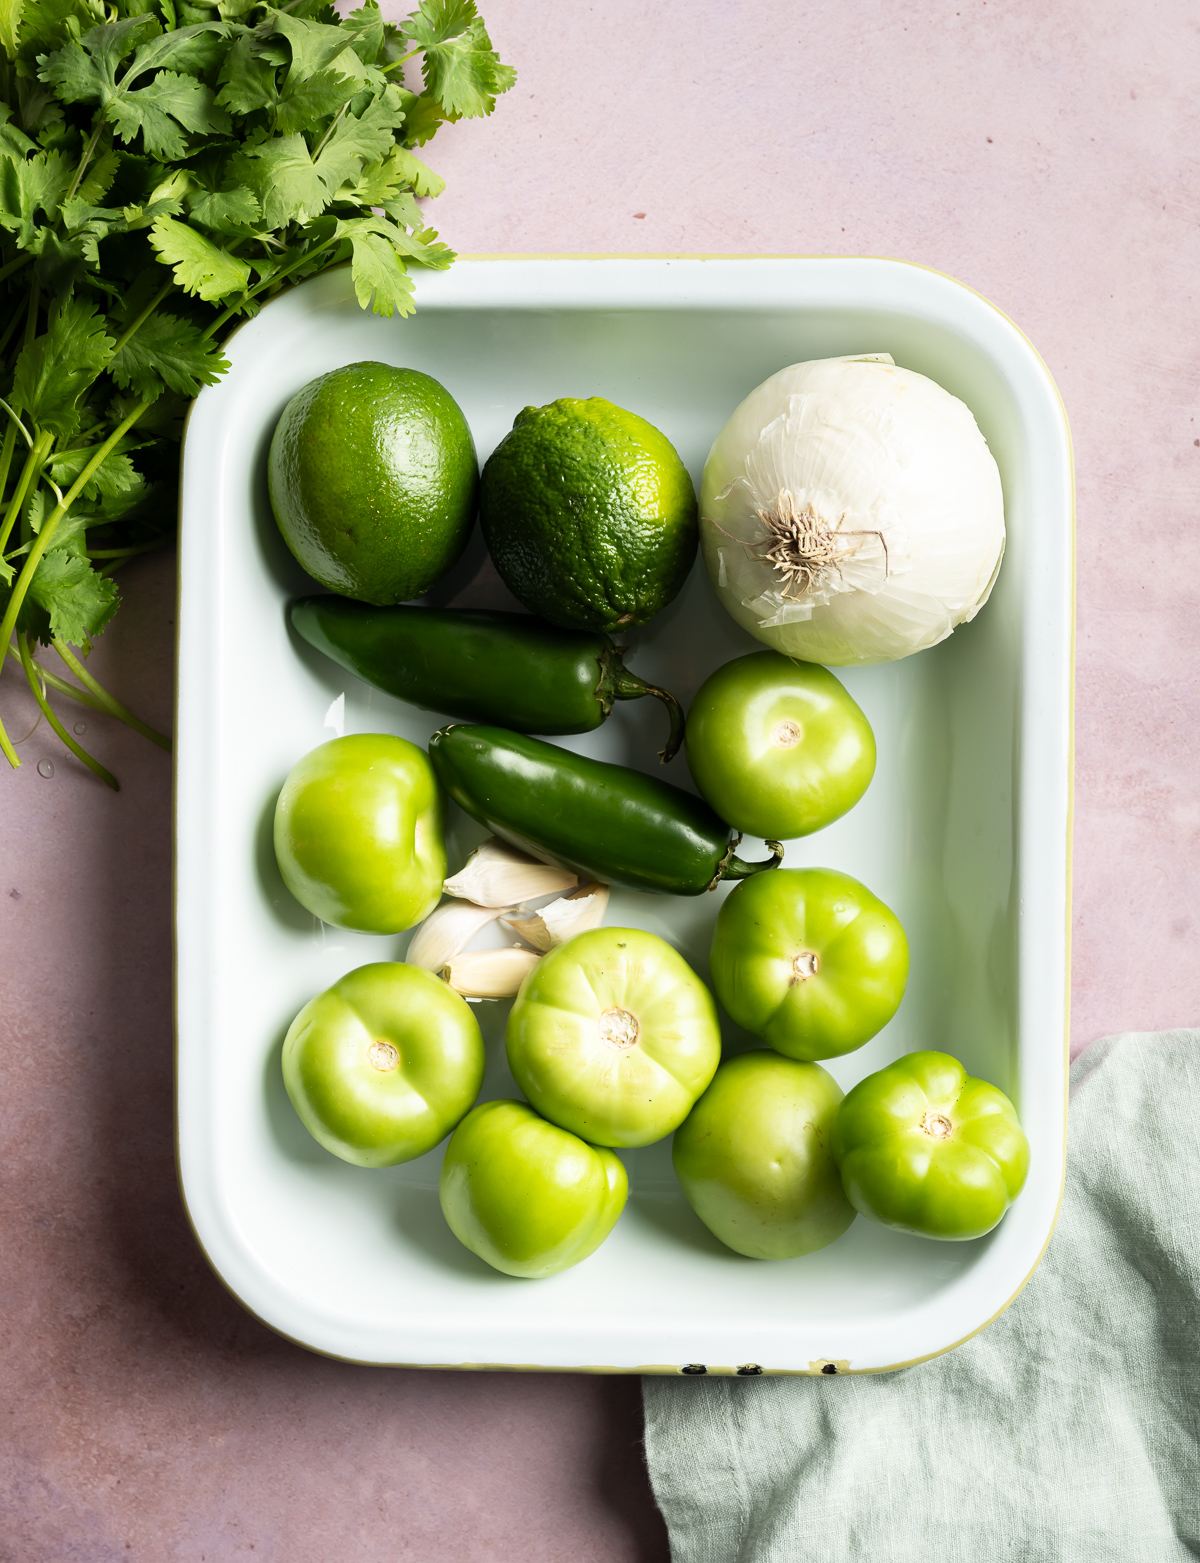 tray with whole tomatillos white onion garlic cloves jalapeños limes cilantro green napkin